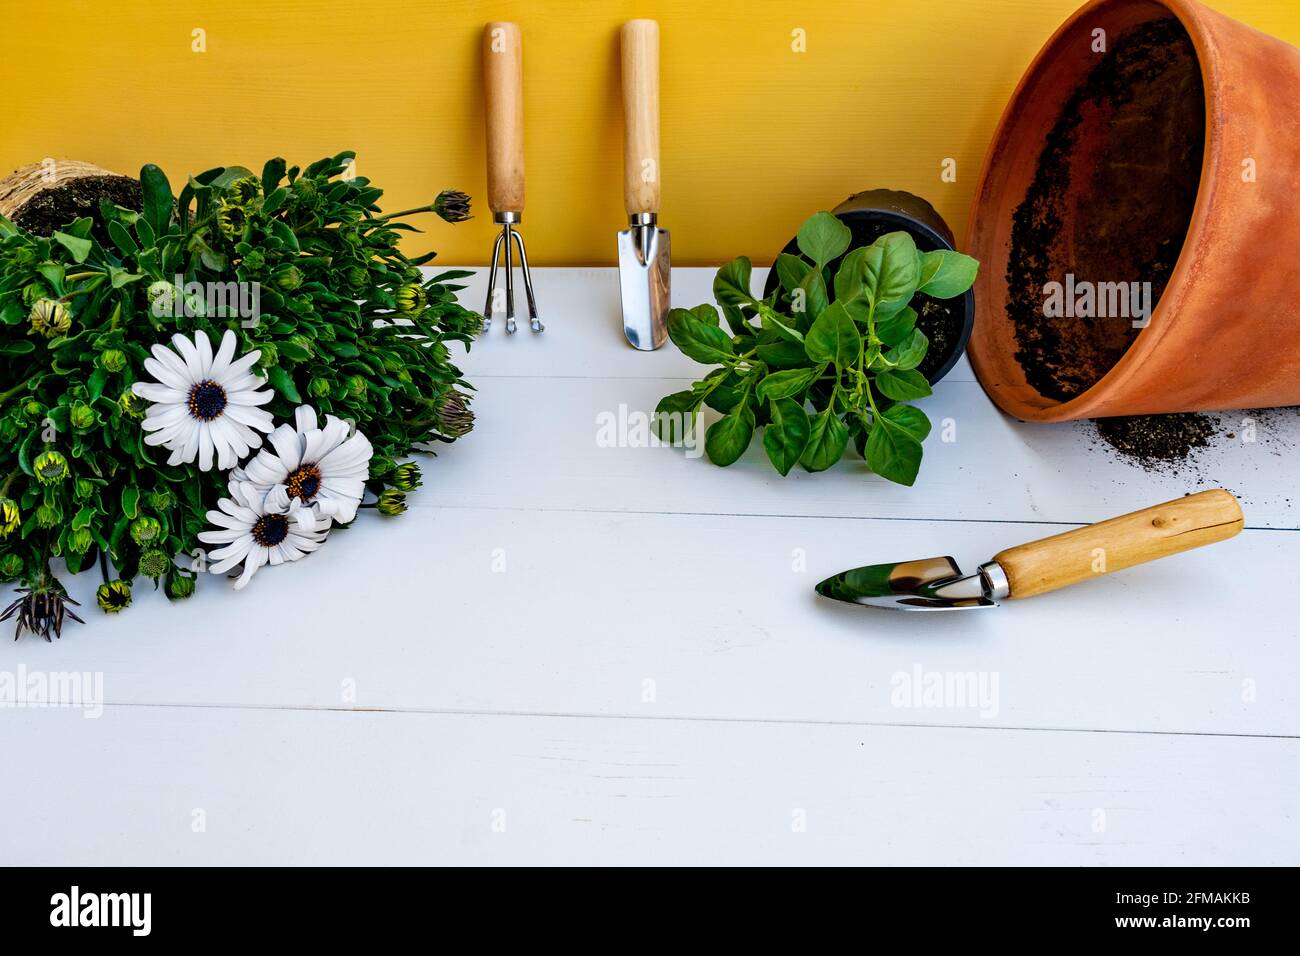 Attrezzi di giardinaggio appoggiati contro parete gialla, pentola e Daisy pianta e basilico su sfondo bianco di legno. Concetto di giardino primaverile. Foto Stock